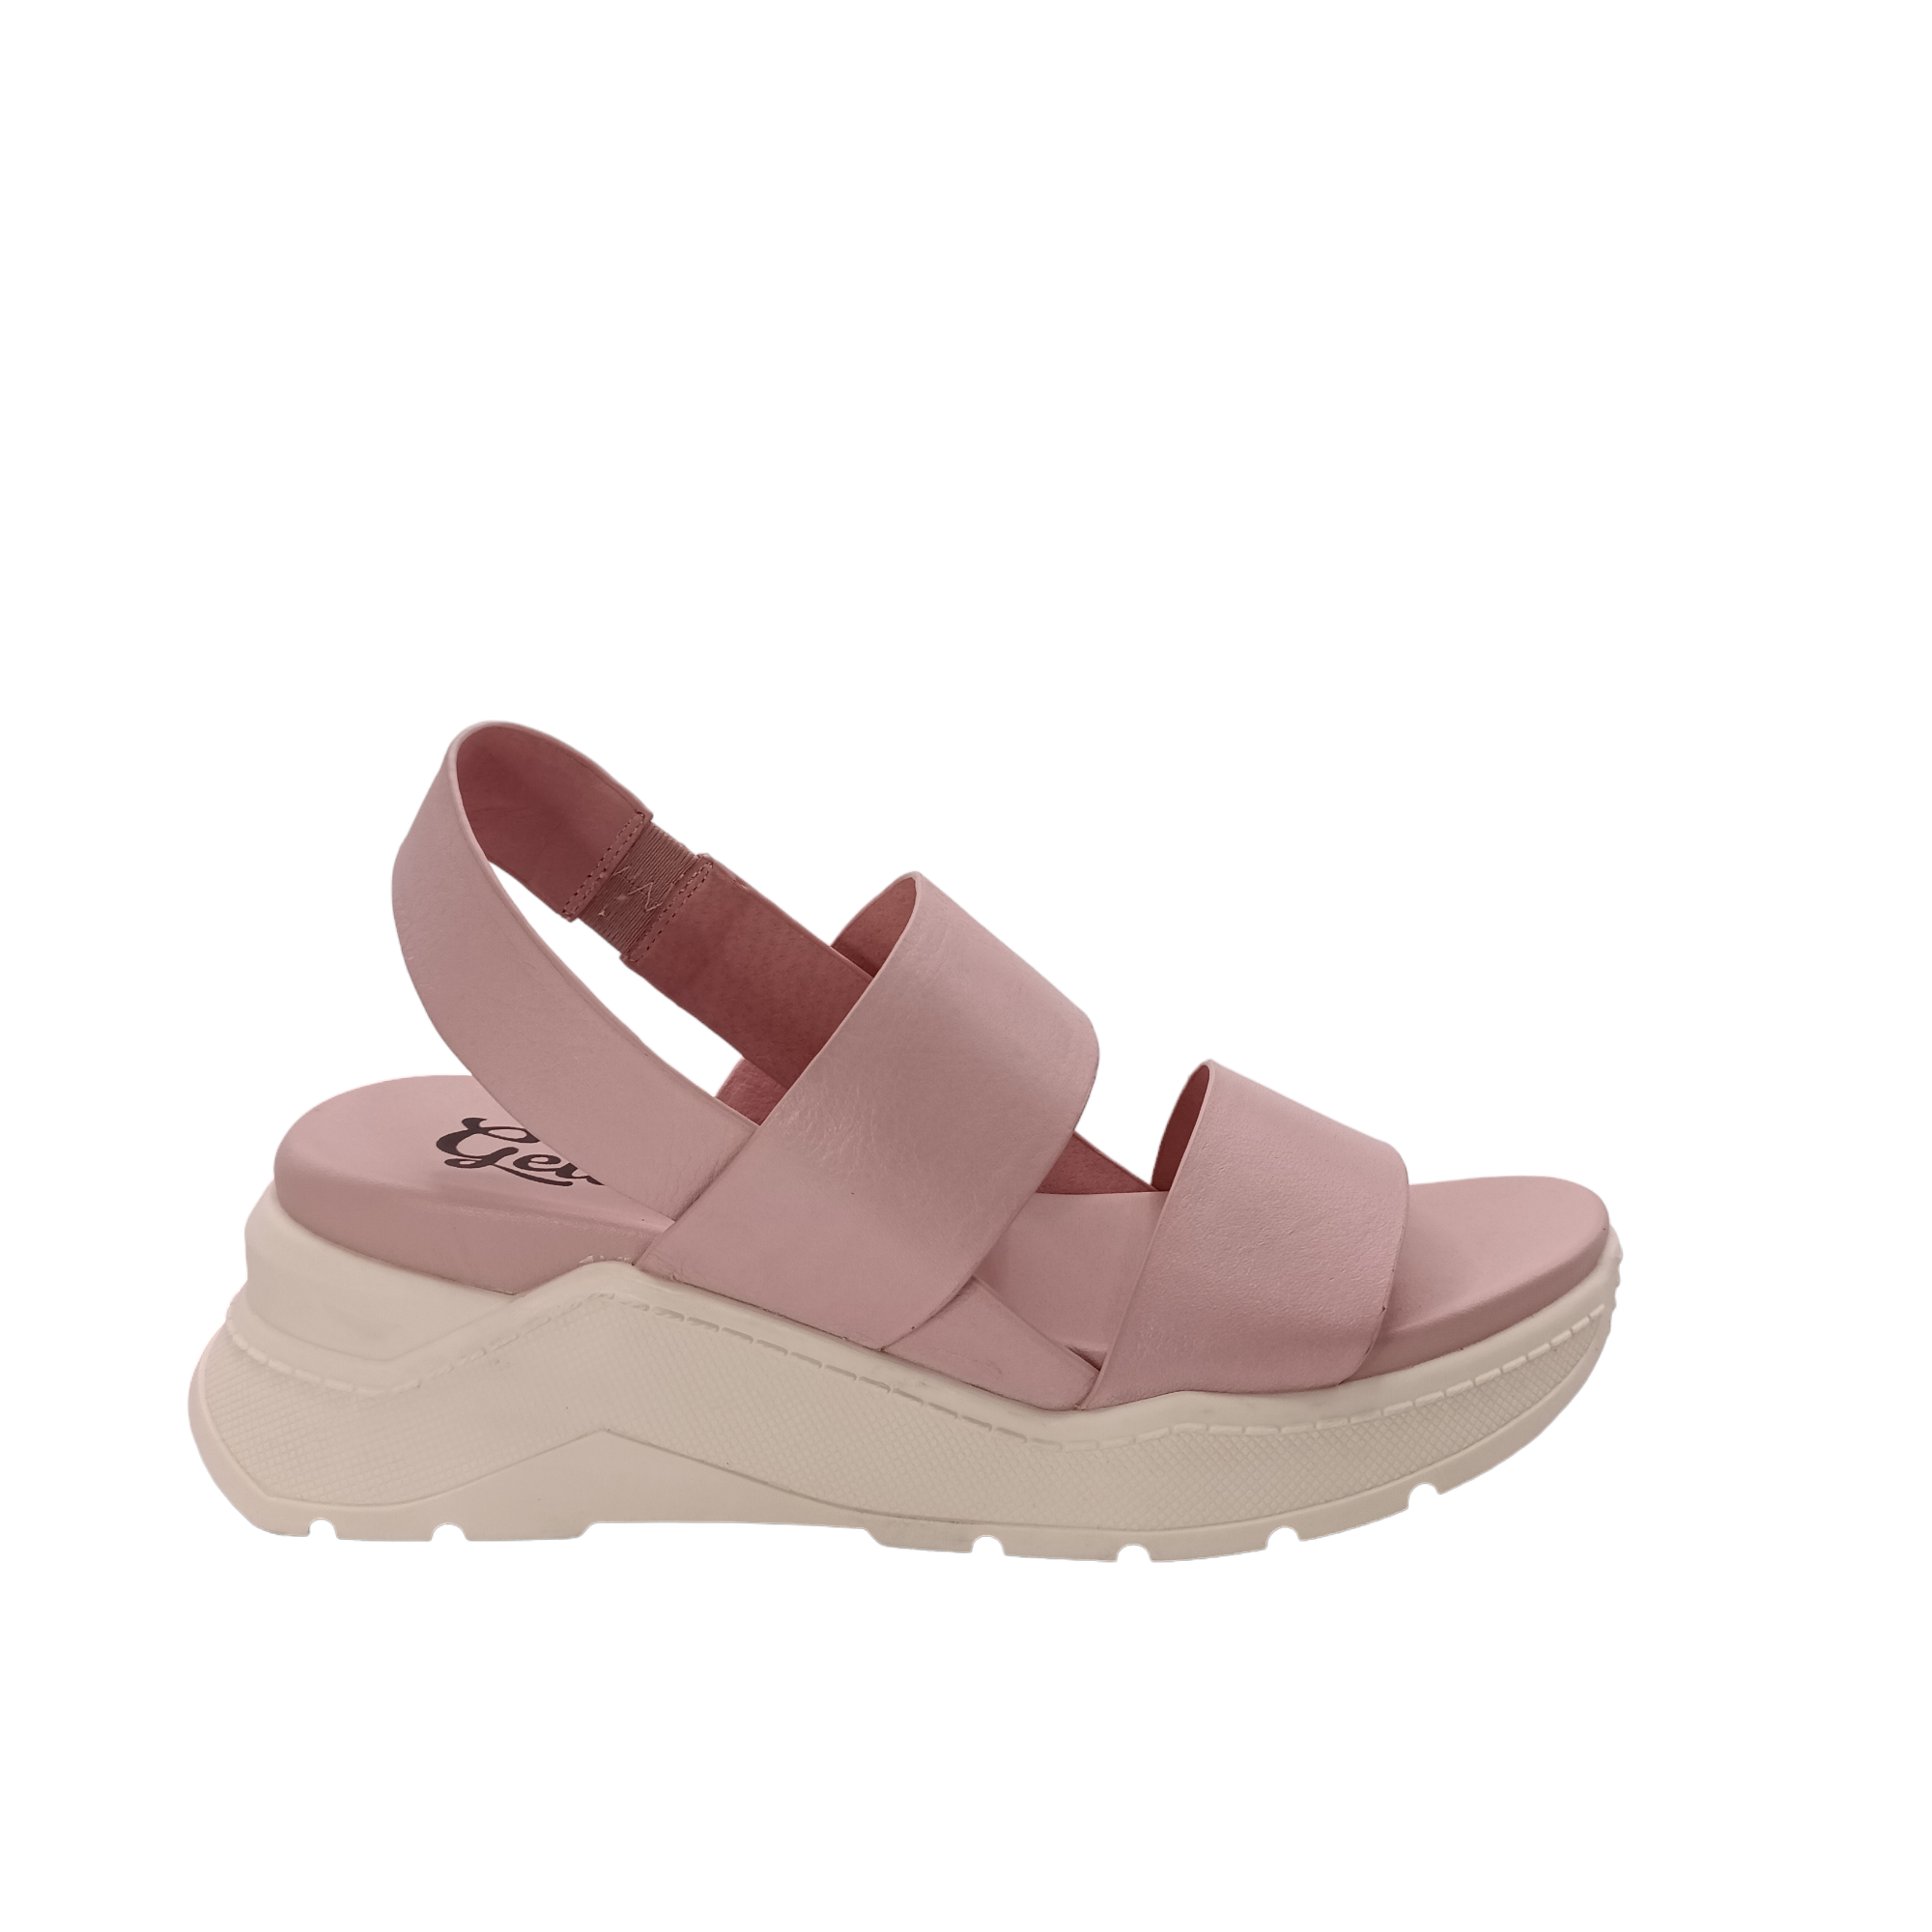 Force - shoe&amp;me - Gelato - Sandal - Platform, Sandals, Summer, Womens